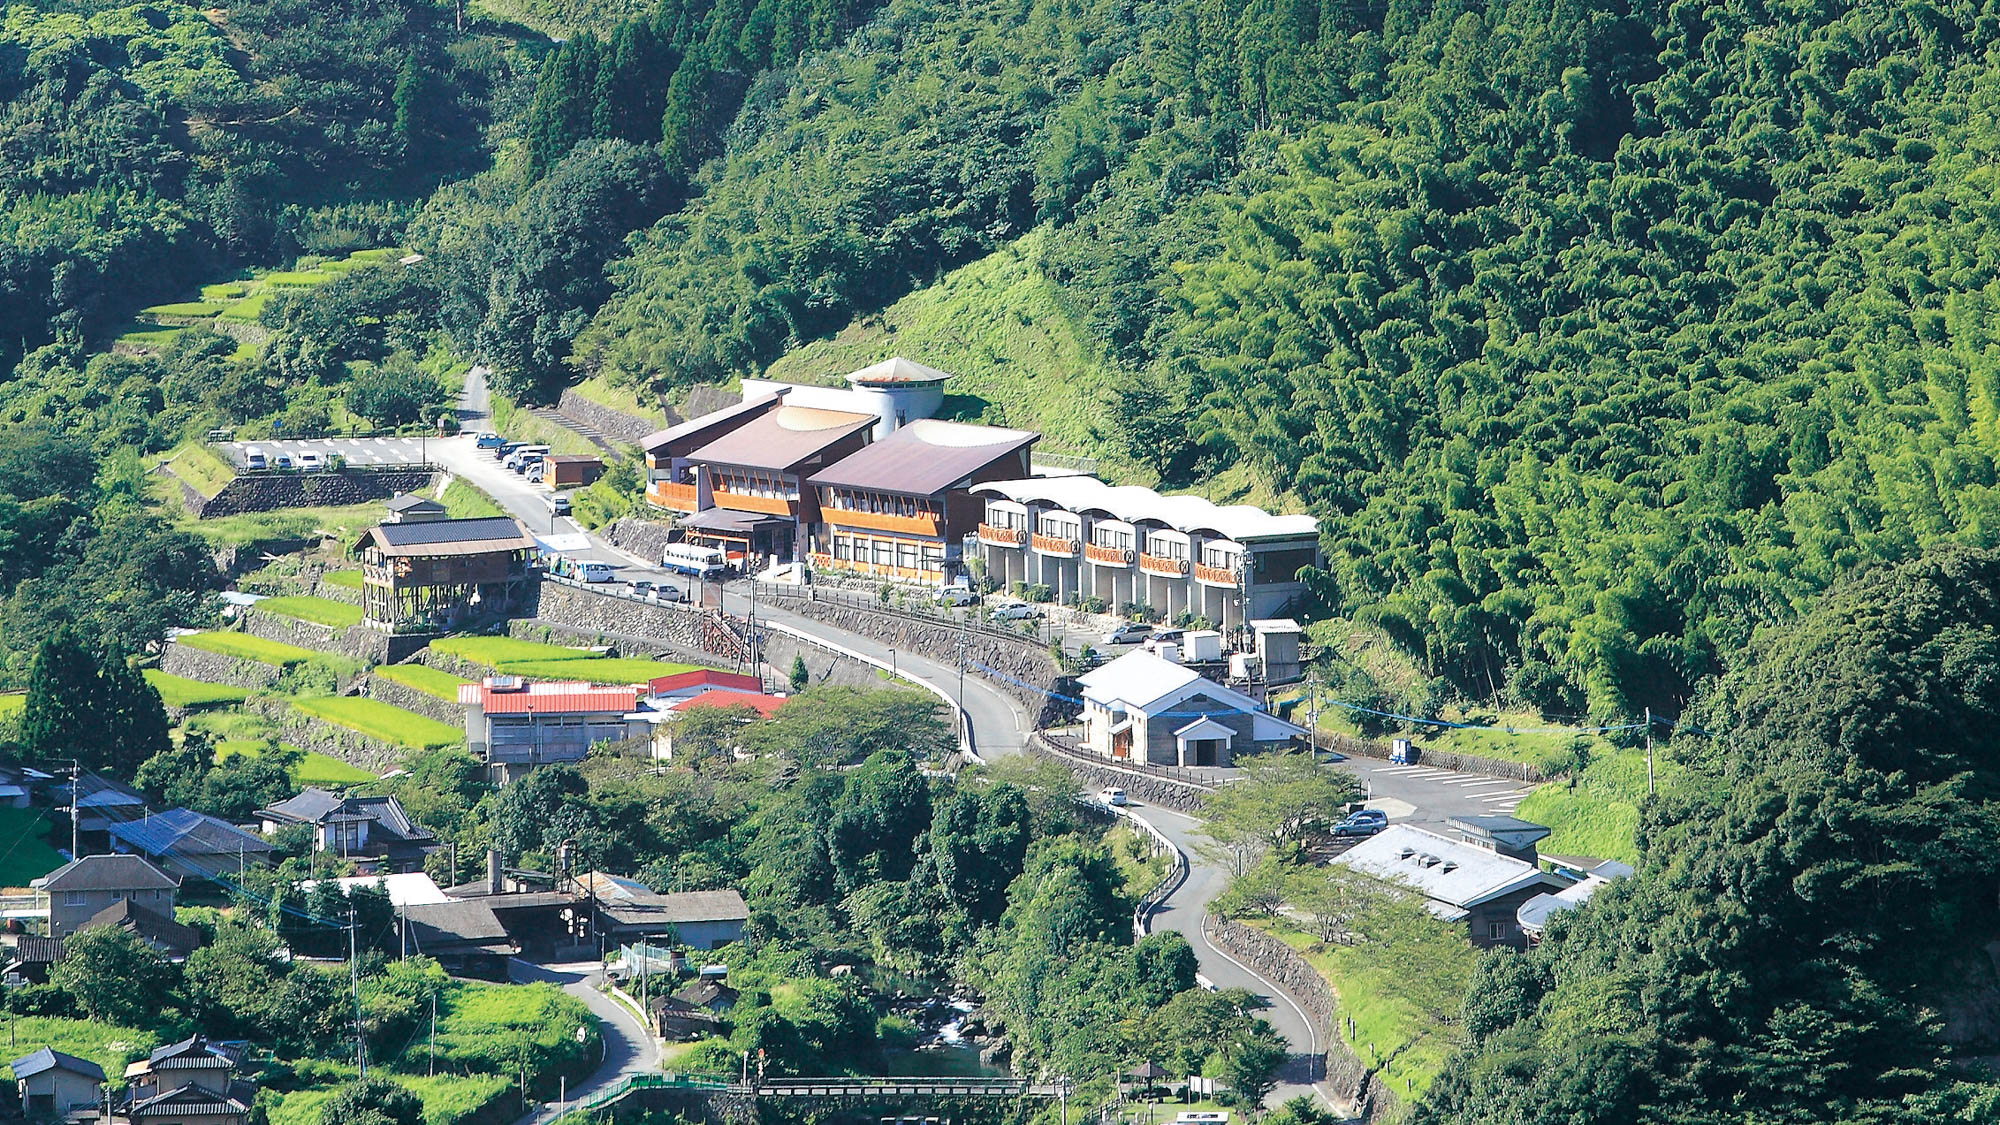 一勝地温泉 かわせみ 熊本県球磨村 一勝地温泉の旅館 旅行と宿のクリップ